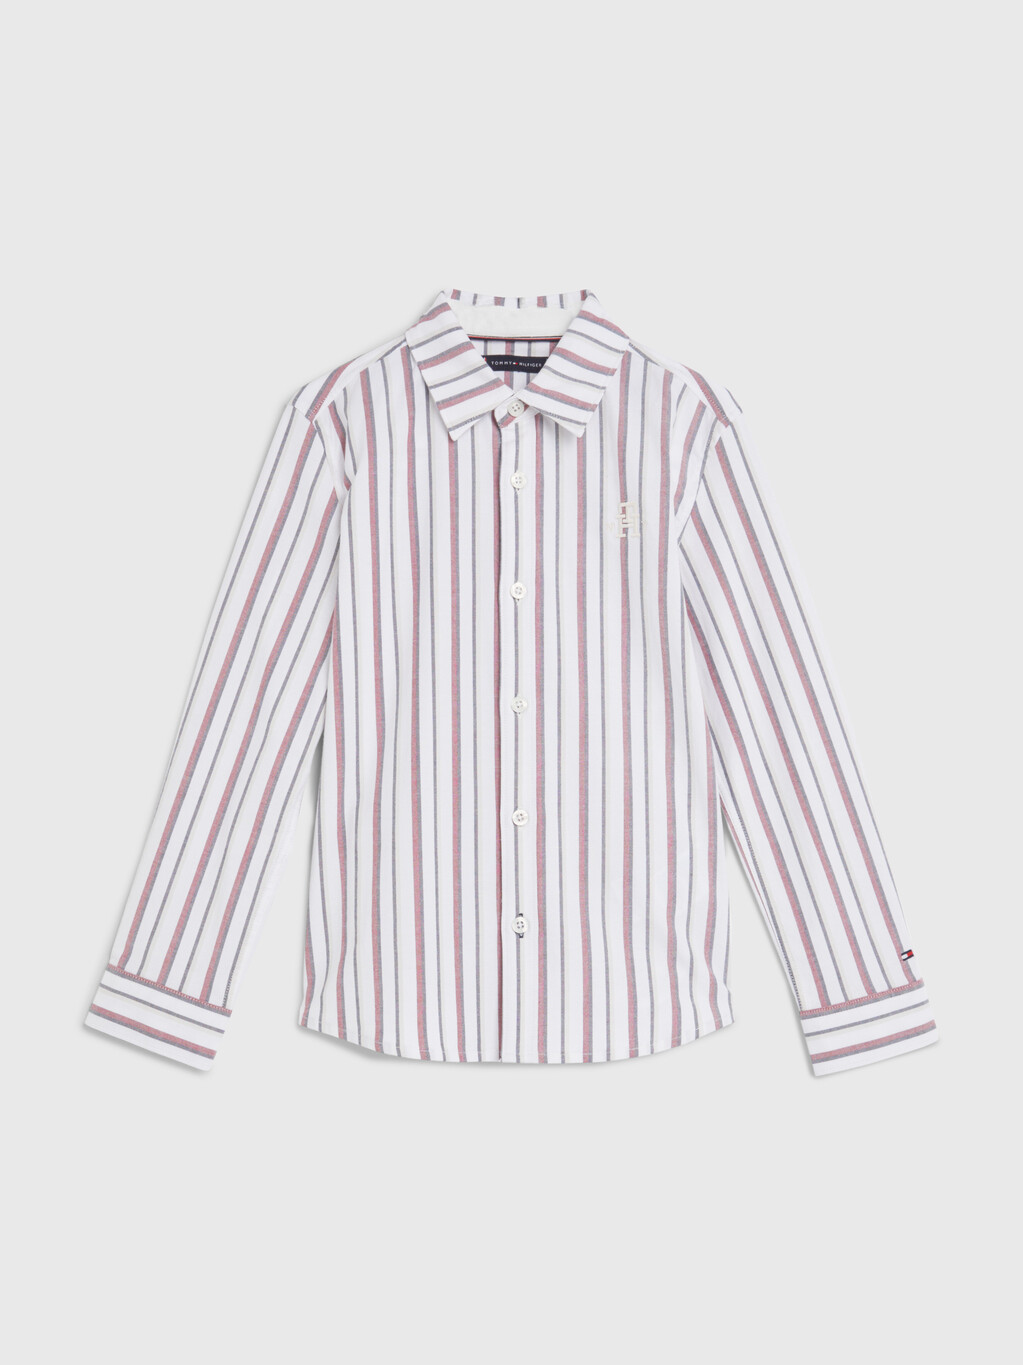 經典條紋 Monogram 刺繡恤衫, White Base / Global Stripes, hi-res